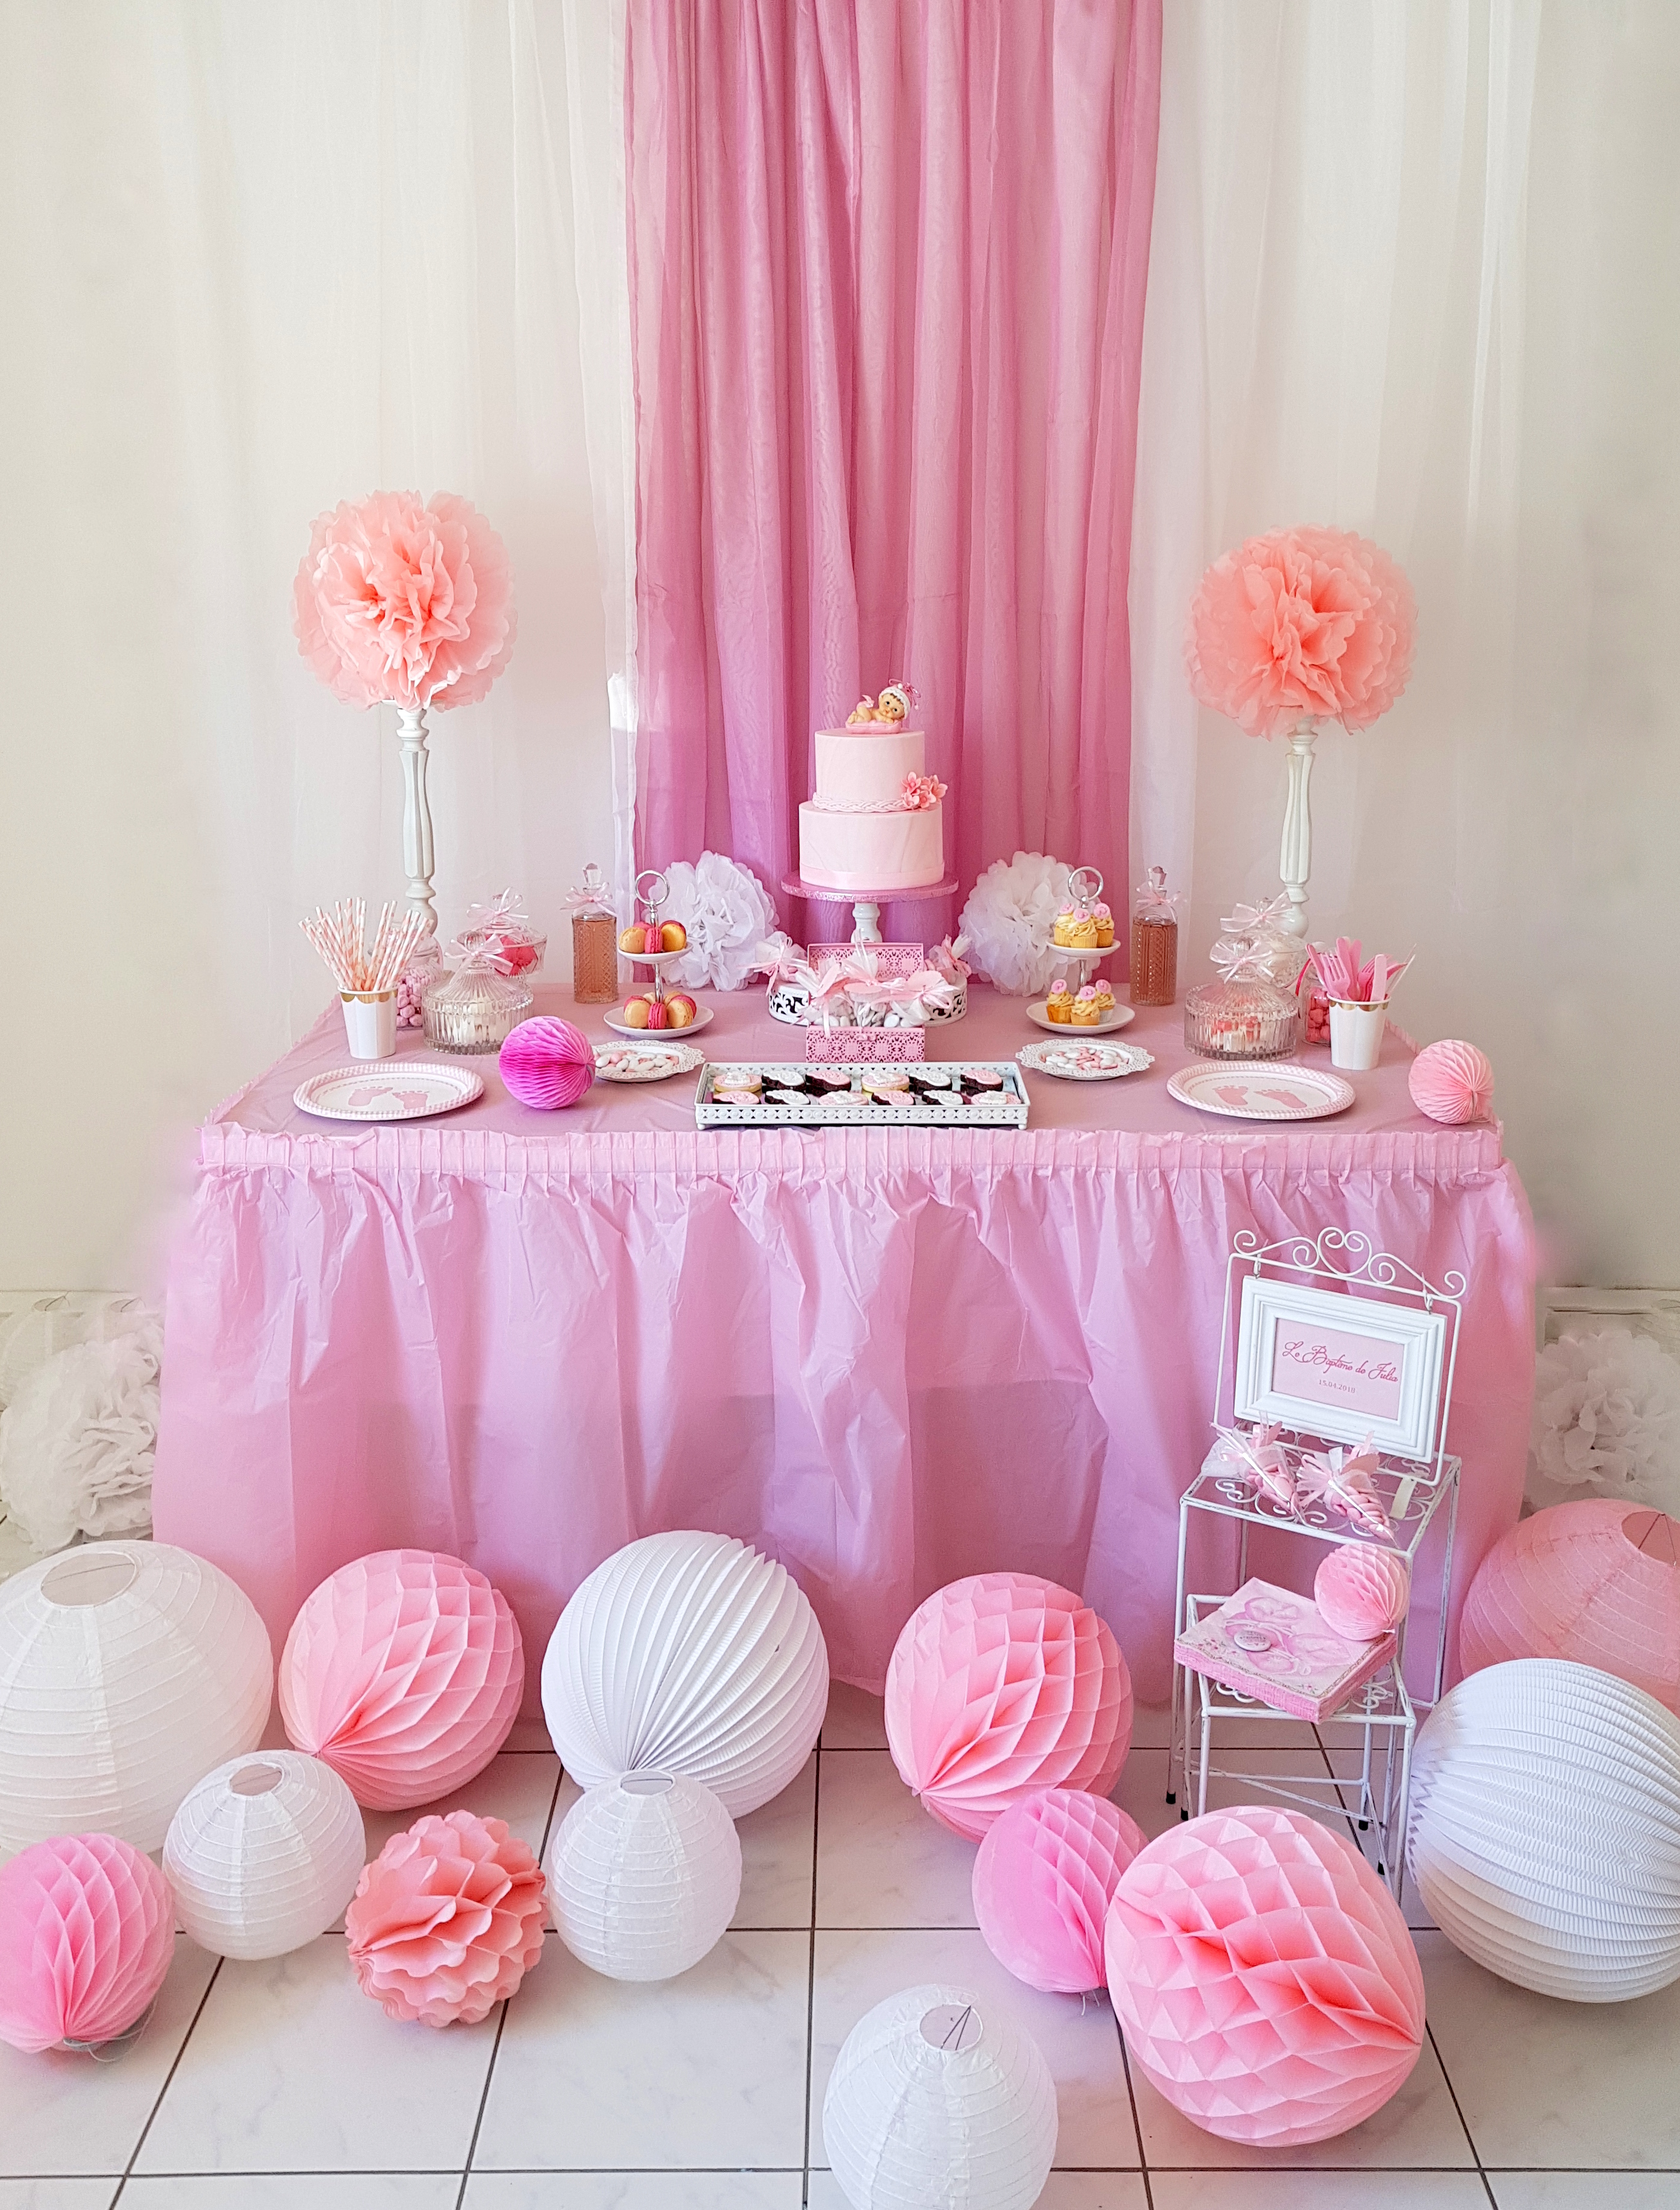 Un blog de fille: Décoration  Table d'anniversaire rose et